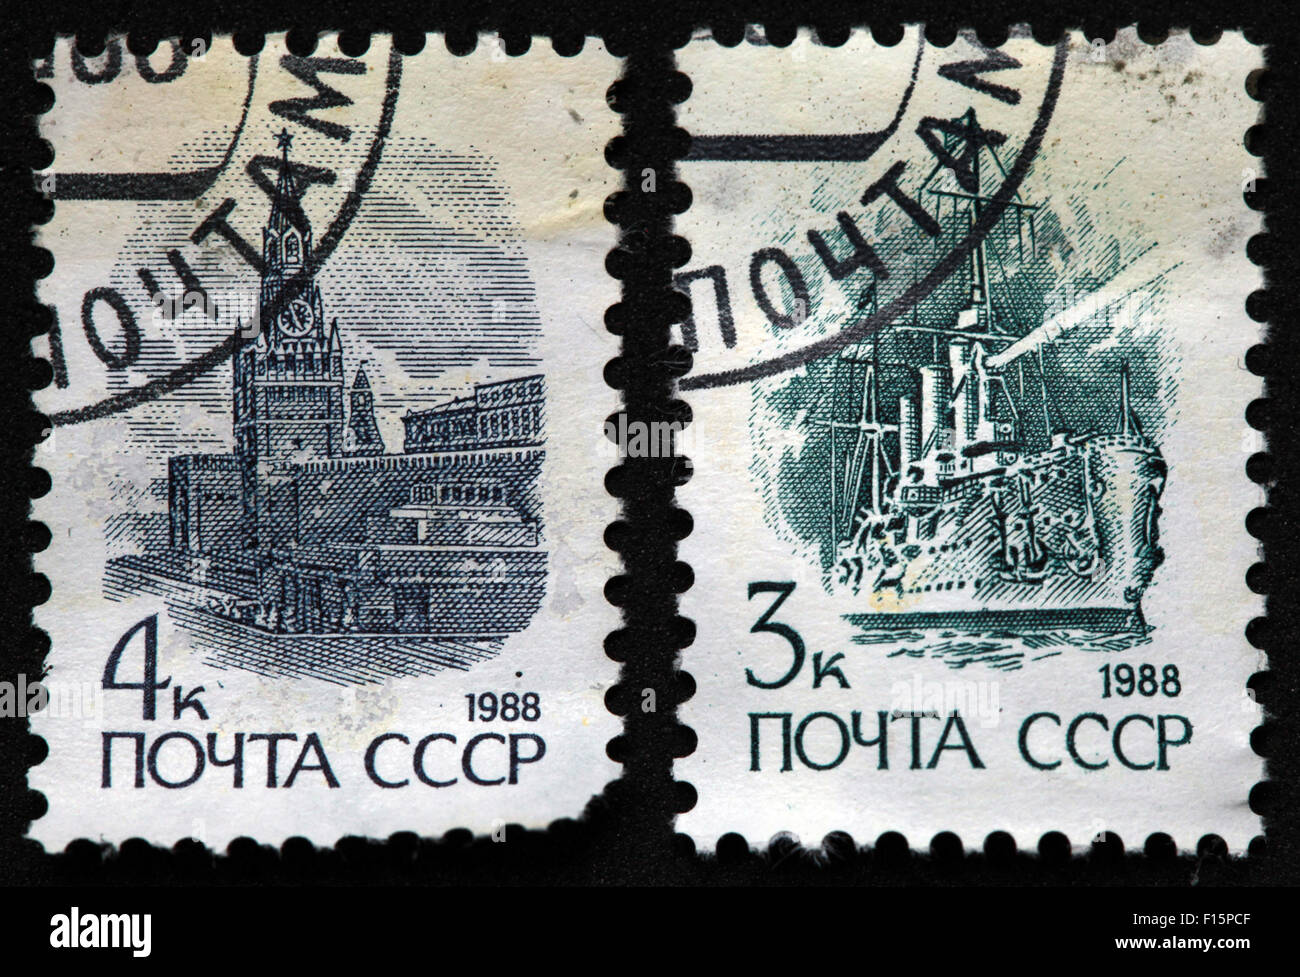 CCCP 4Kon 4K 1988 navire navire de guerre noyta Kremlin vert bleu 3k 3Kon URSS timbres soviétique Banque D'Images